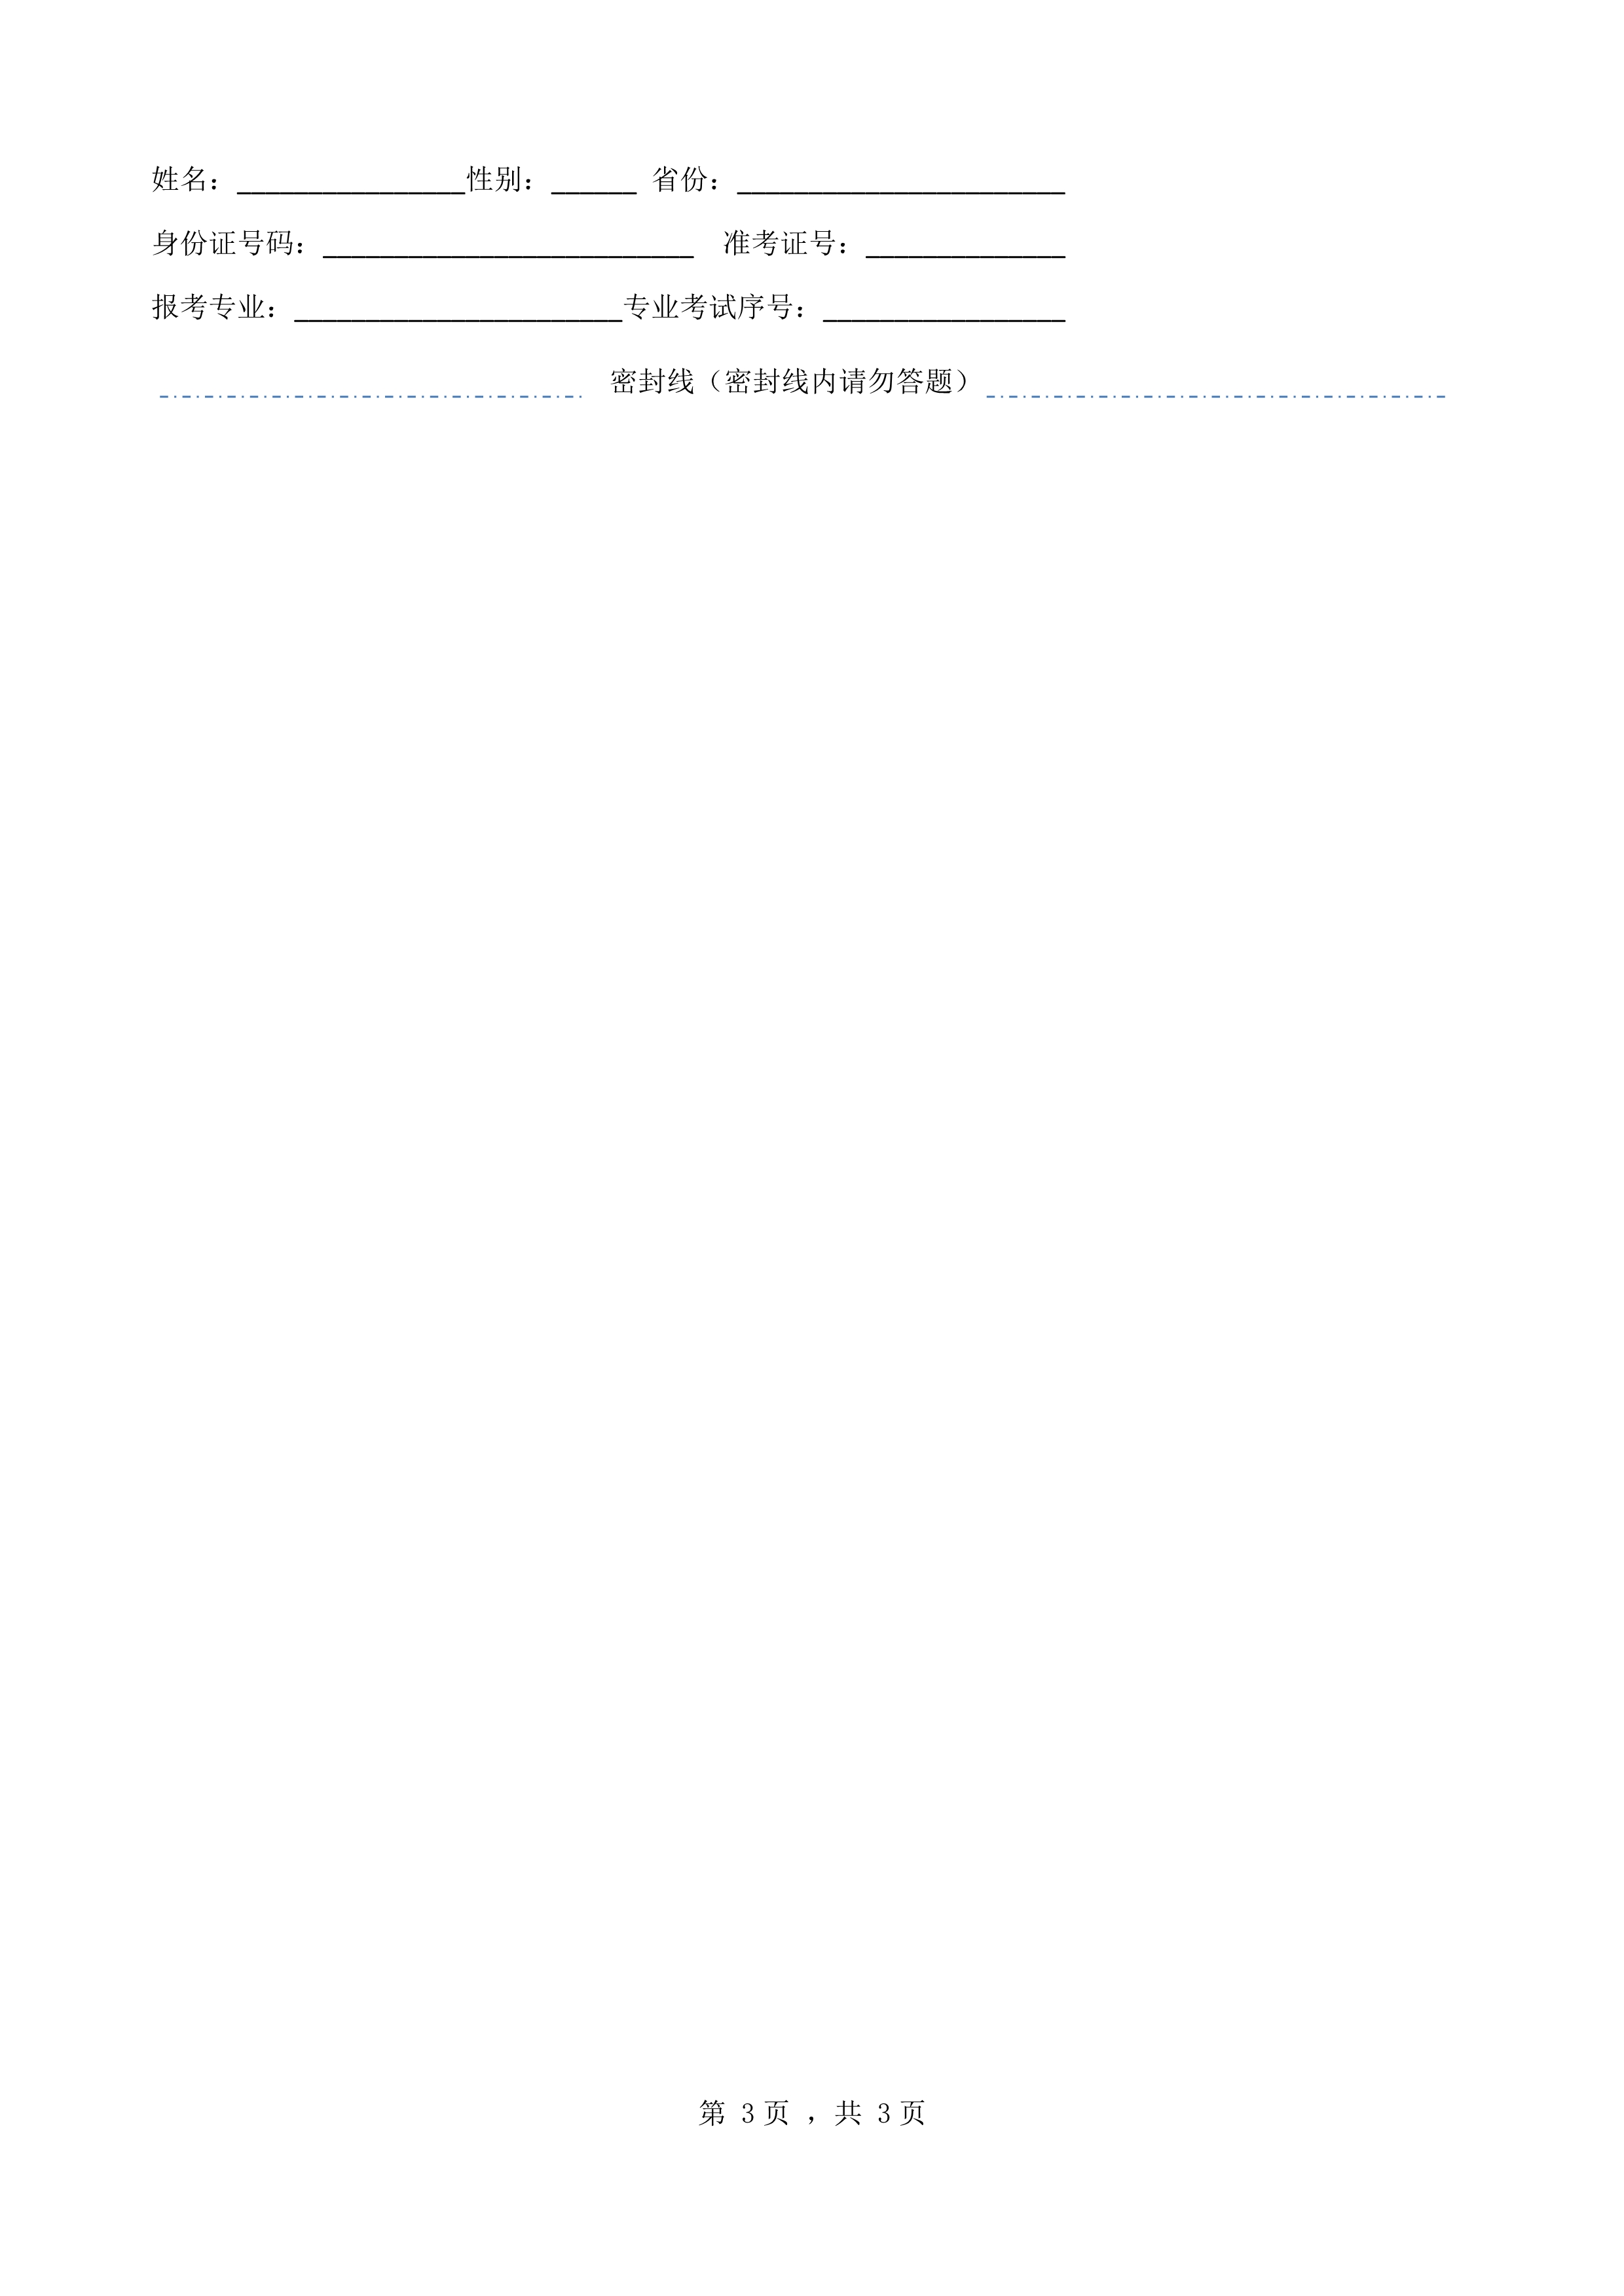 南京艺术学院2022年本科招生音乐学（音乐传播）专业《文论写作》科目考试答题纸 - 副本_3.jpg